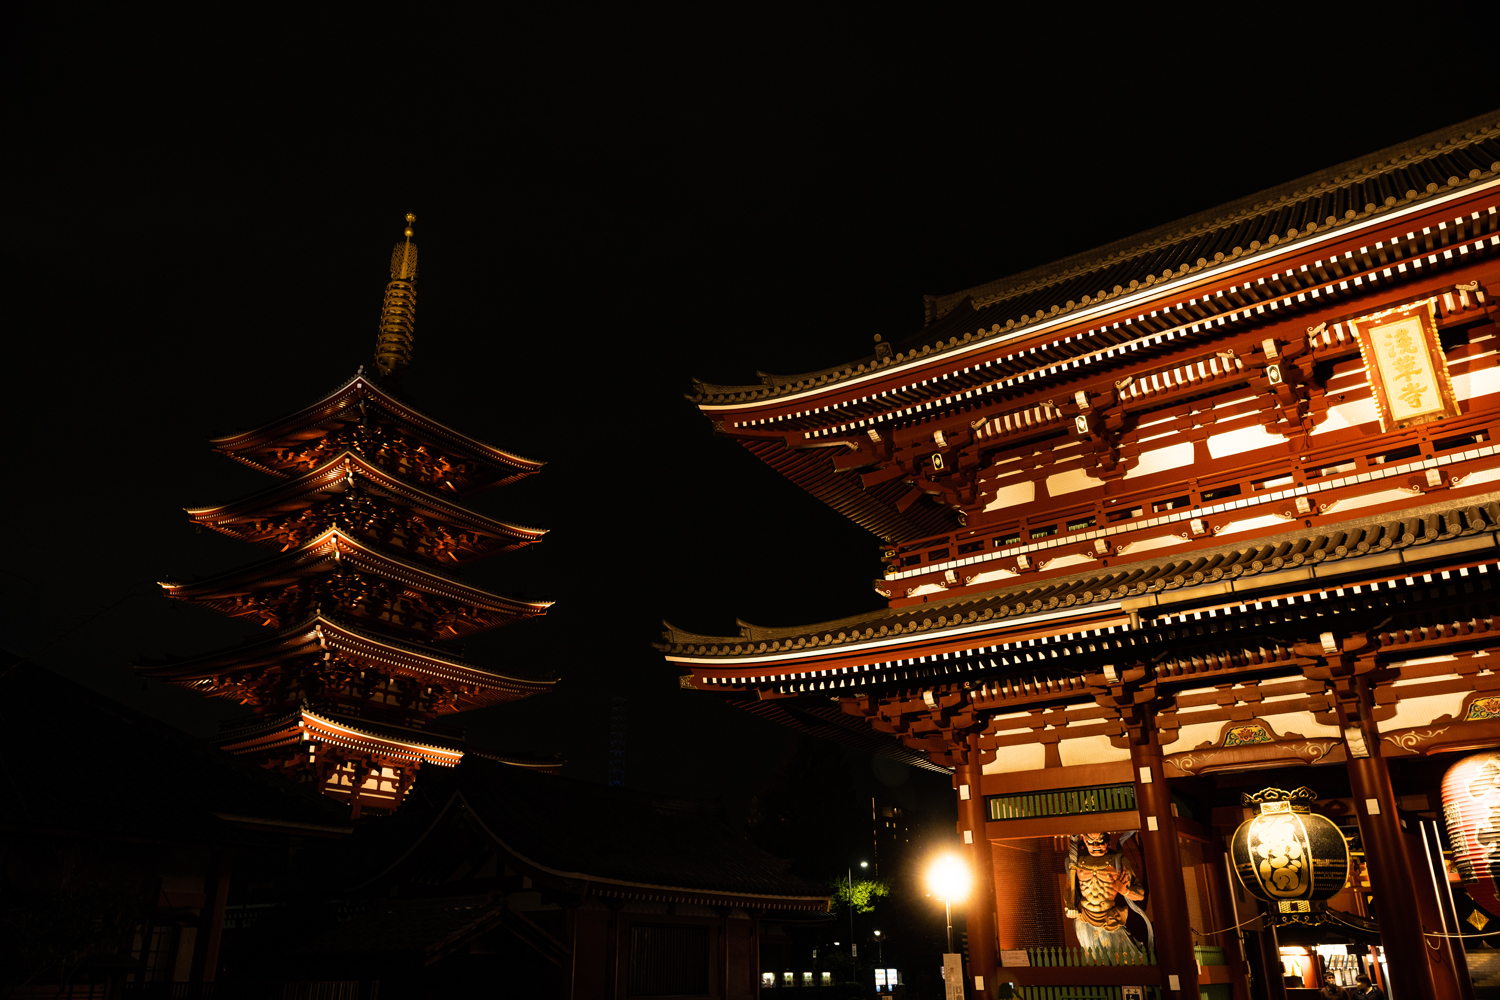 雨上がりの浅草寺夜景